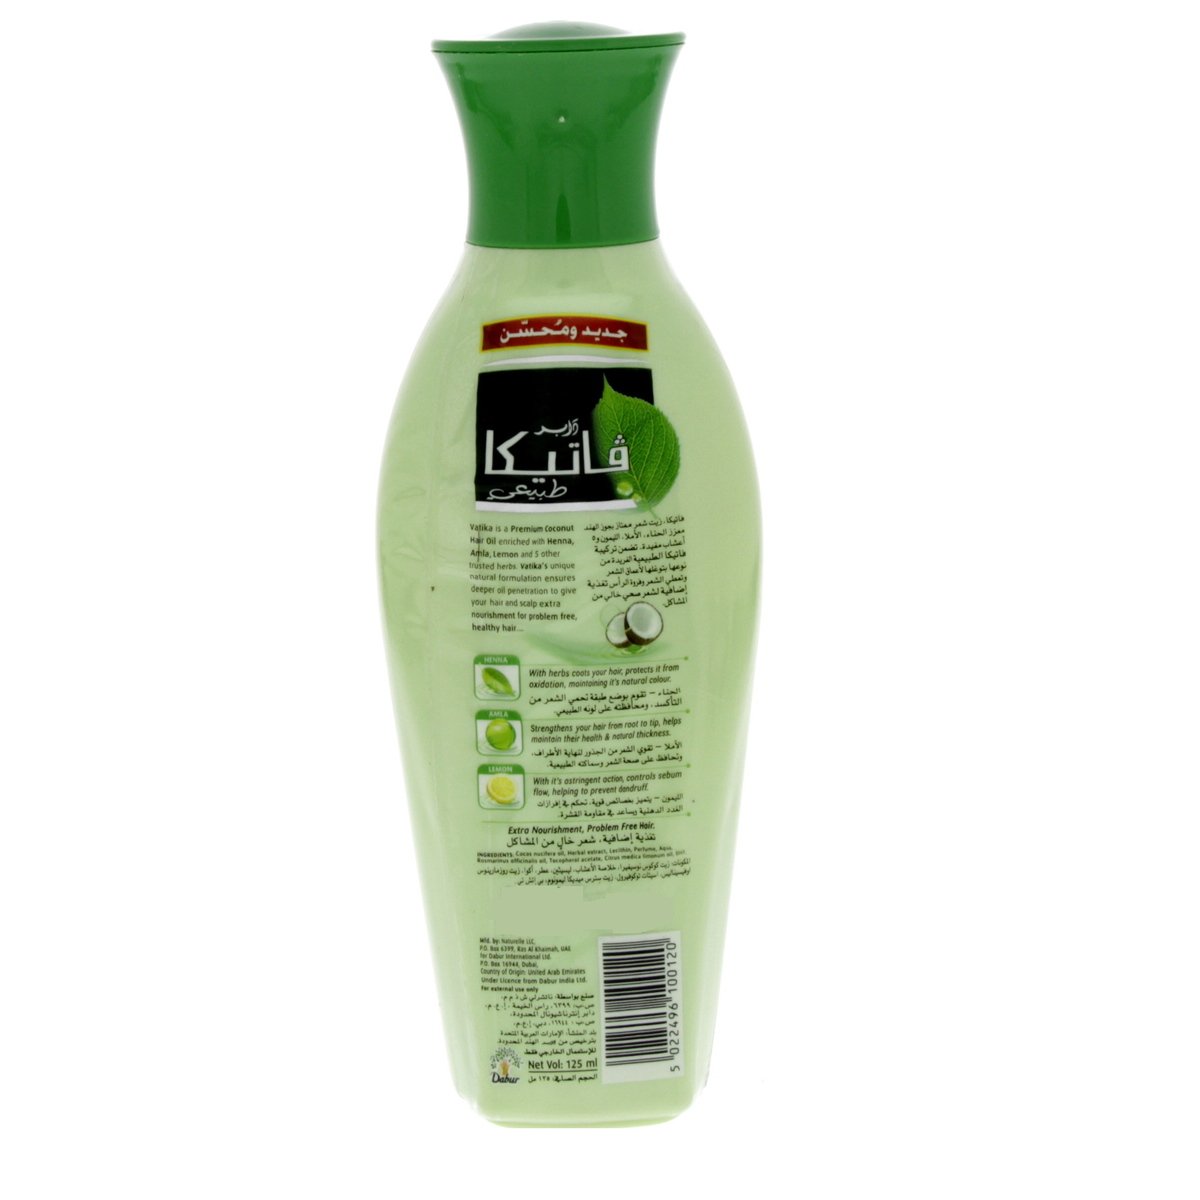 Dabur Vatika Hair Oil 125 ml